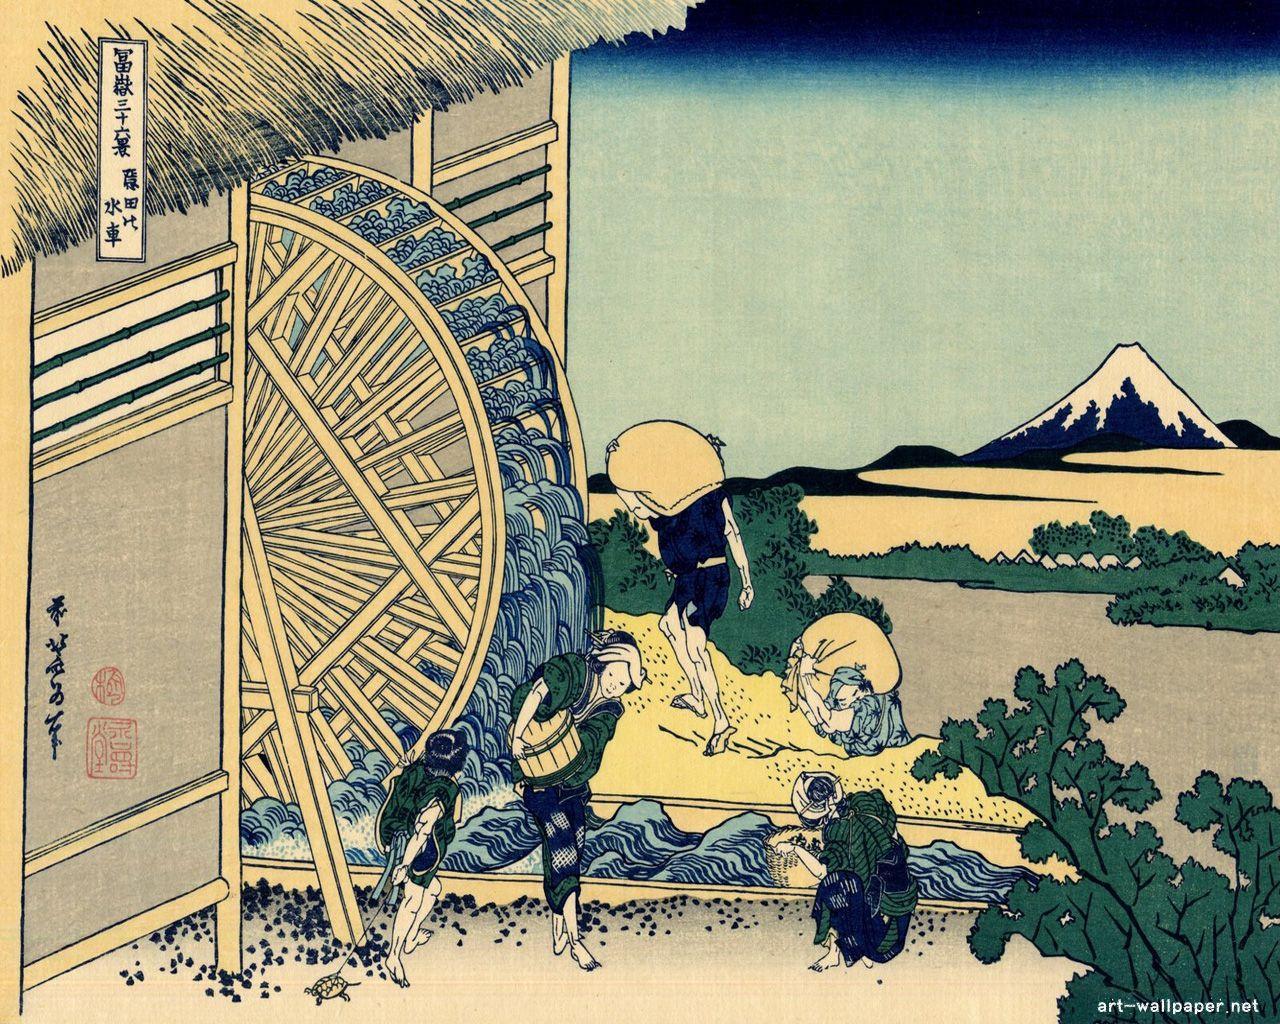 Hokusai Katsushika Painting and Wallpaper. Hokusai & element